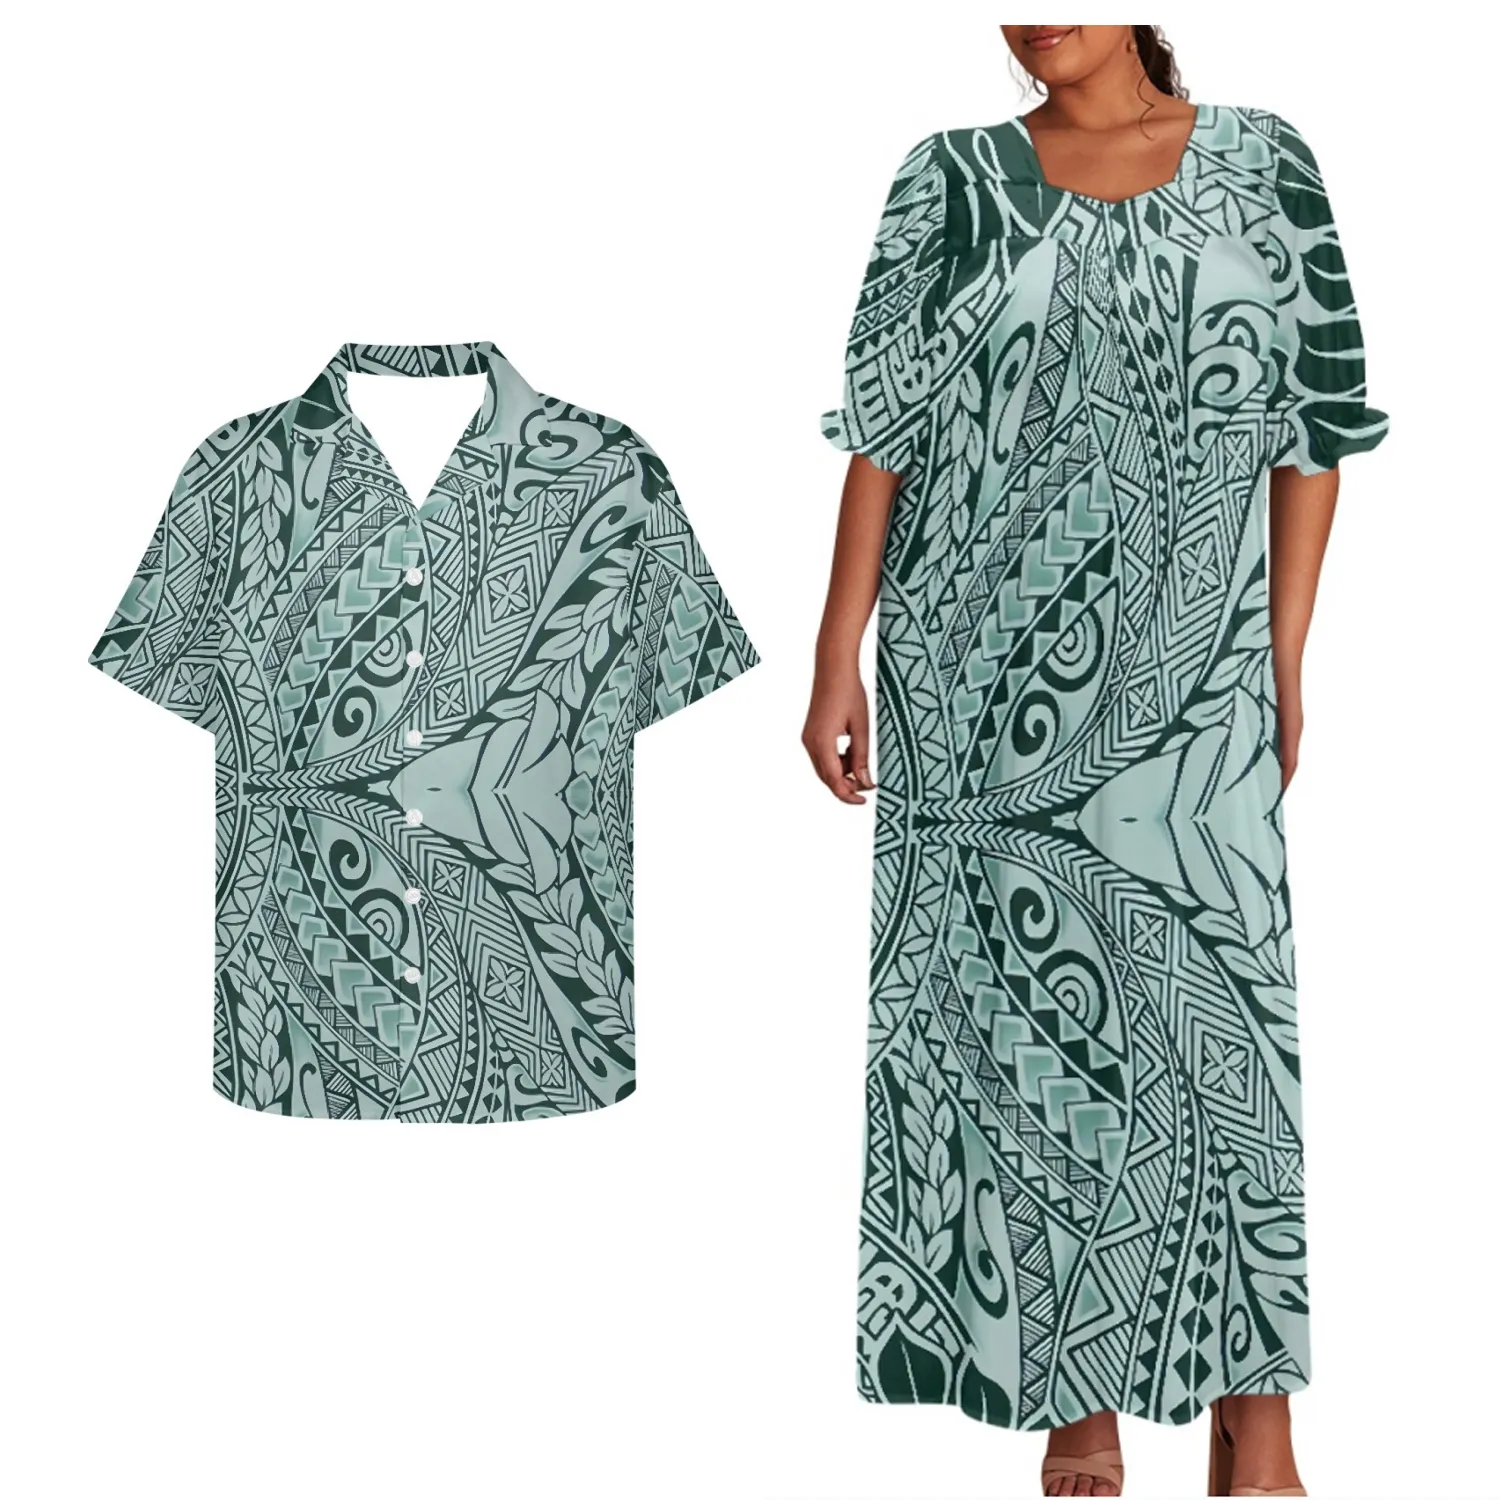 Meilleur prix de gros personnalisé vert hawaïen polynésien Tapa Tribal femmes élégante longue robe correspondant hommes chemises Couple vêtements